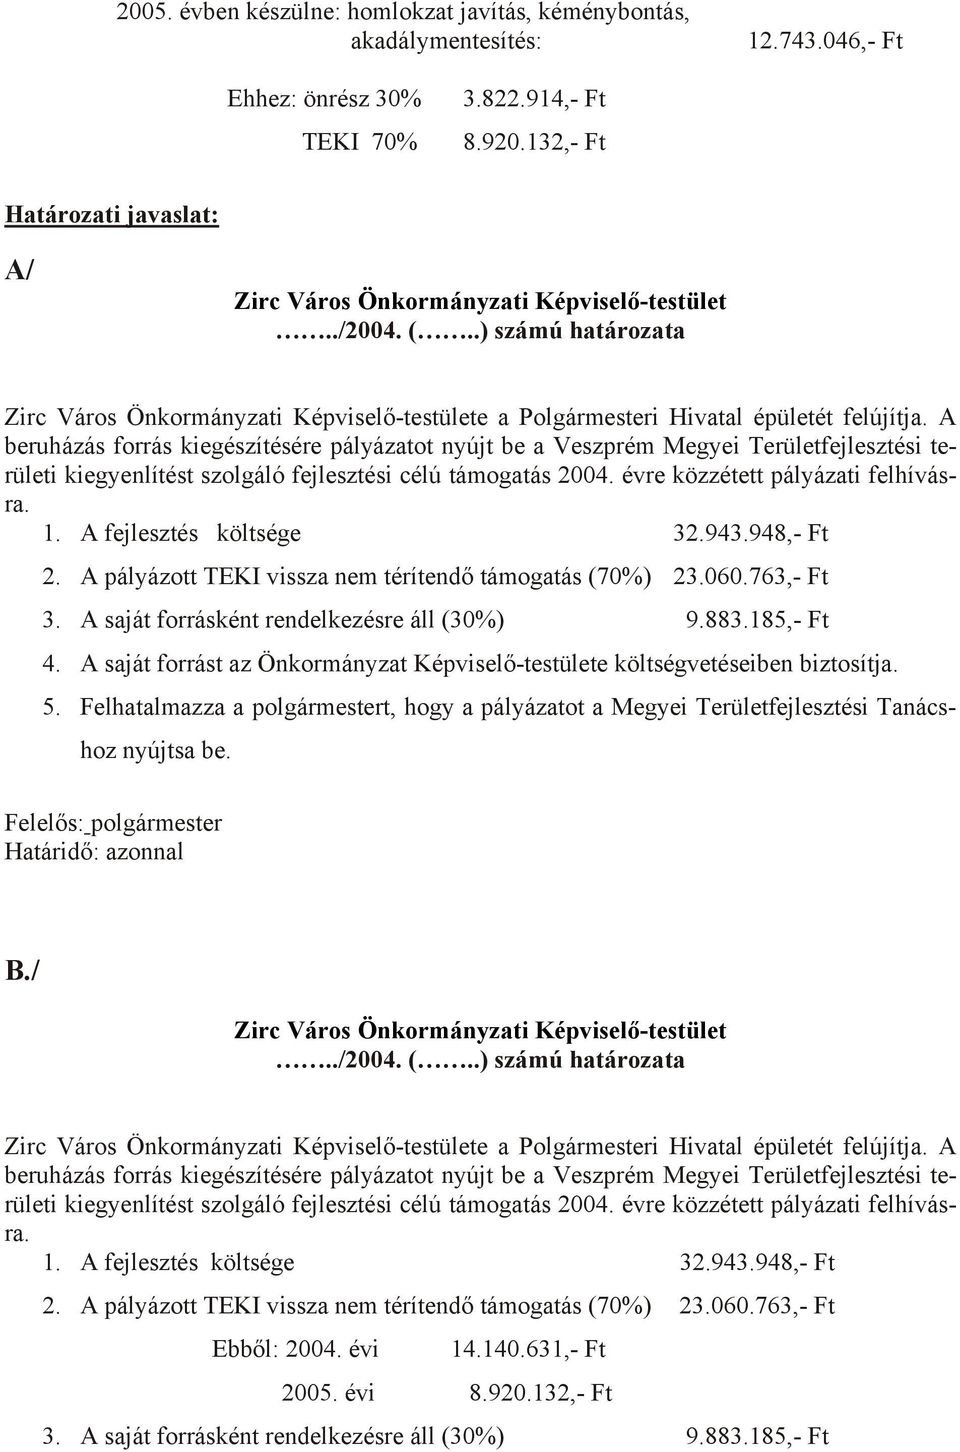 A beruházás forrás kiegészítésére pályázatot nyújt be a Veszprém Megyei Területfejlesztési területi kiegyenlítést szolgáló fejlesztési célú támogatás 2004. évre közzétett pályázati felhívásra. 1.